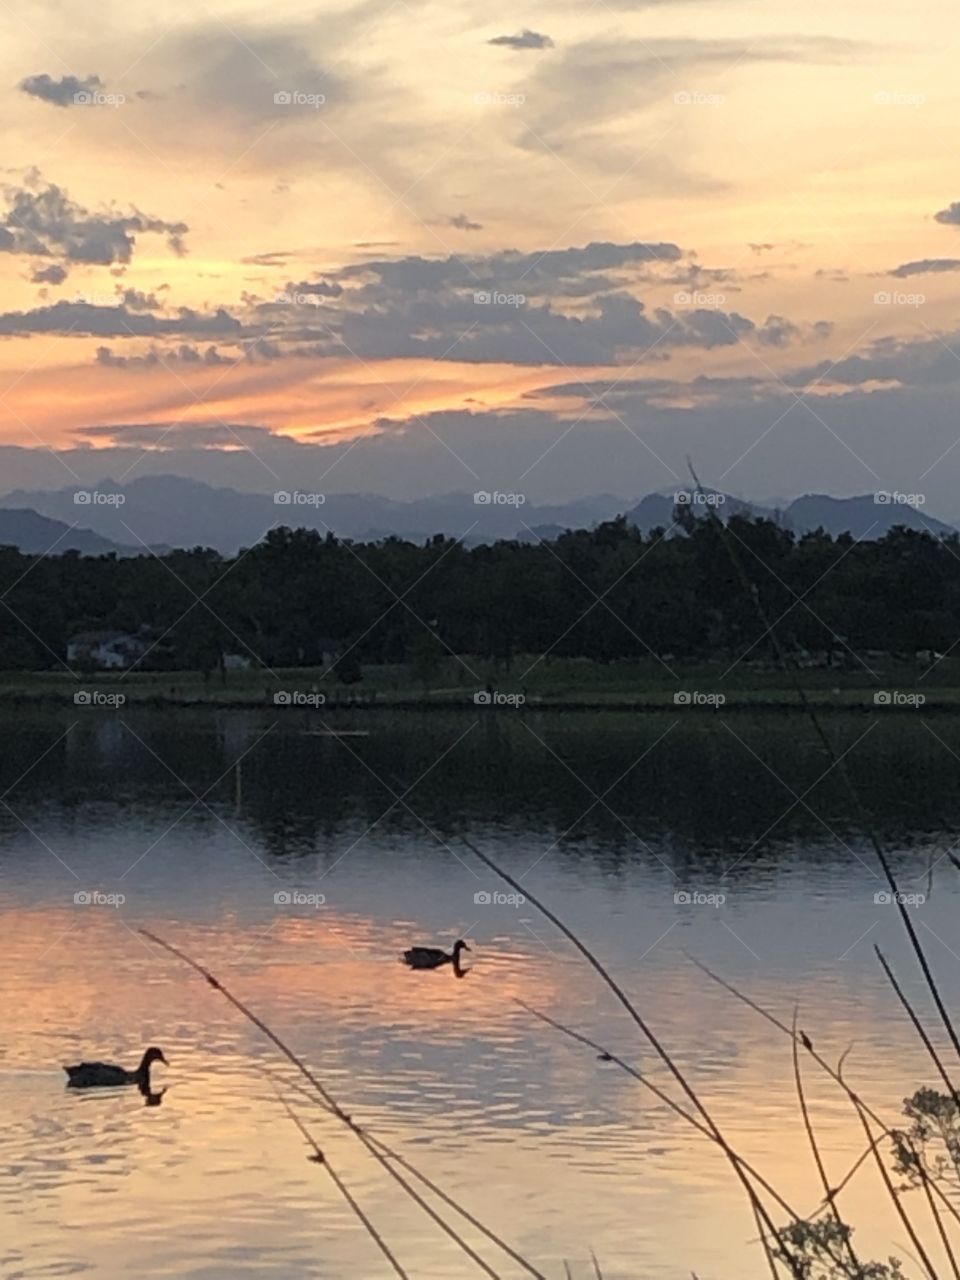 Ducks swimming in Lake at sunset 